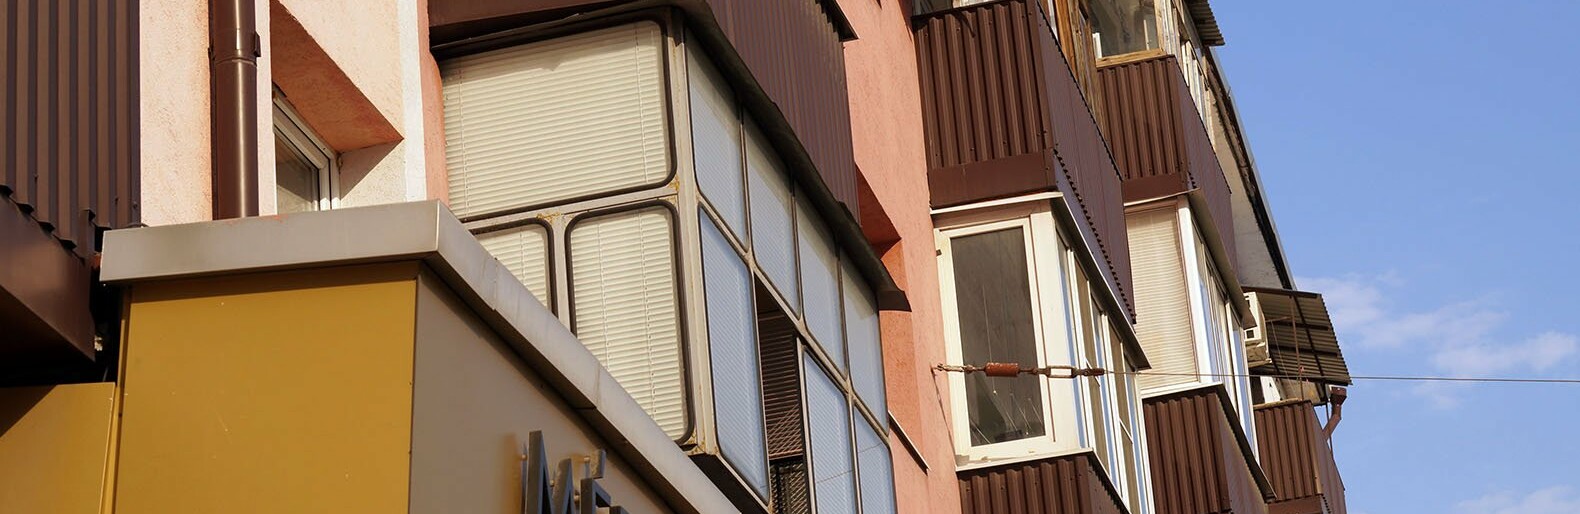 Меньше половины белгородских семей могут позволить себе съёмную квартиру